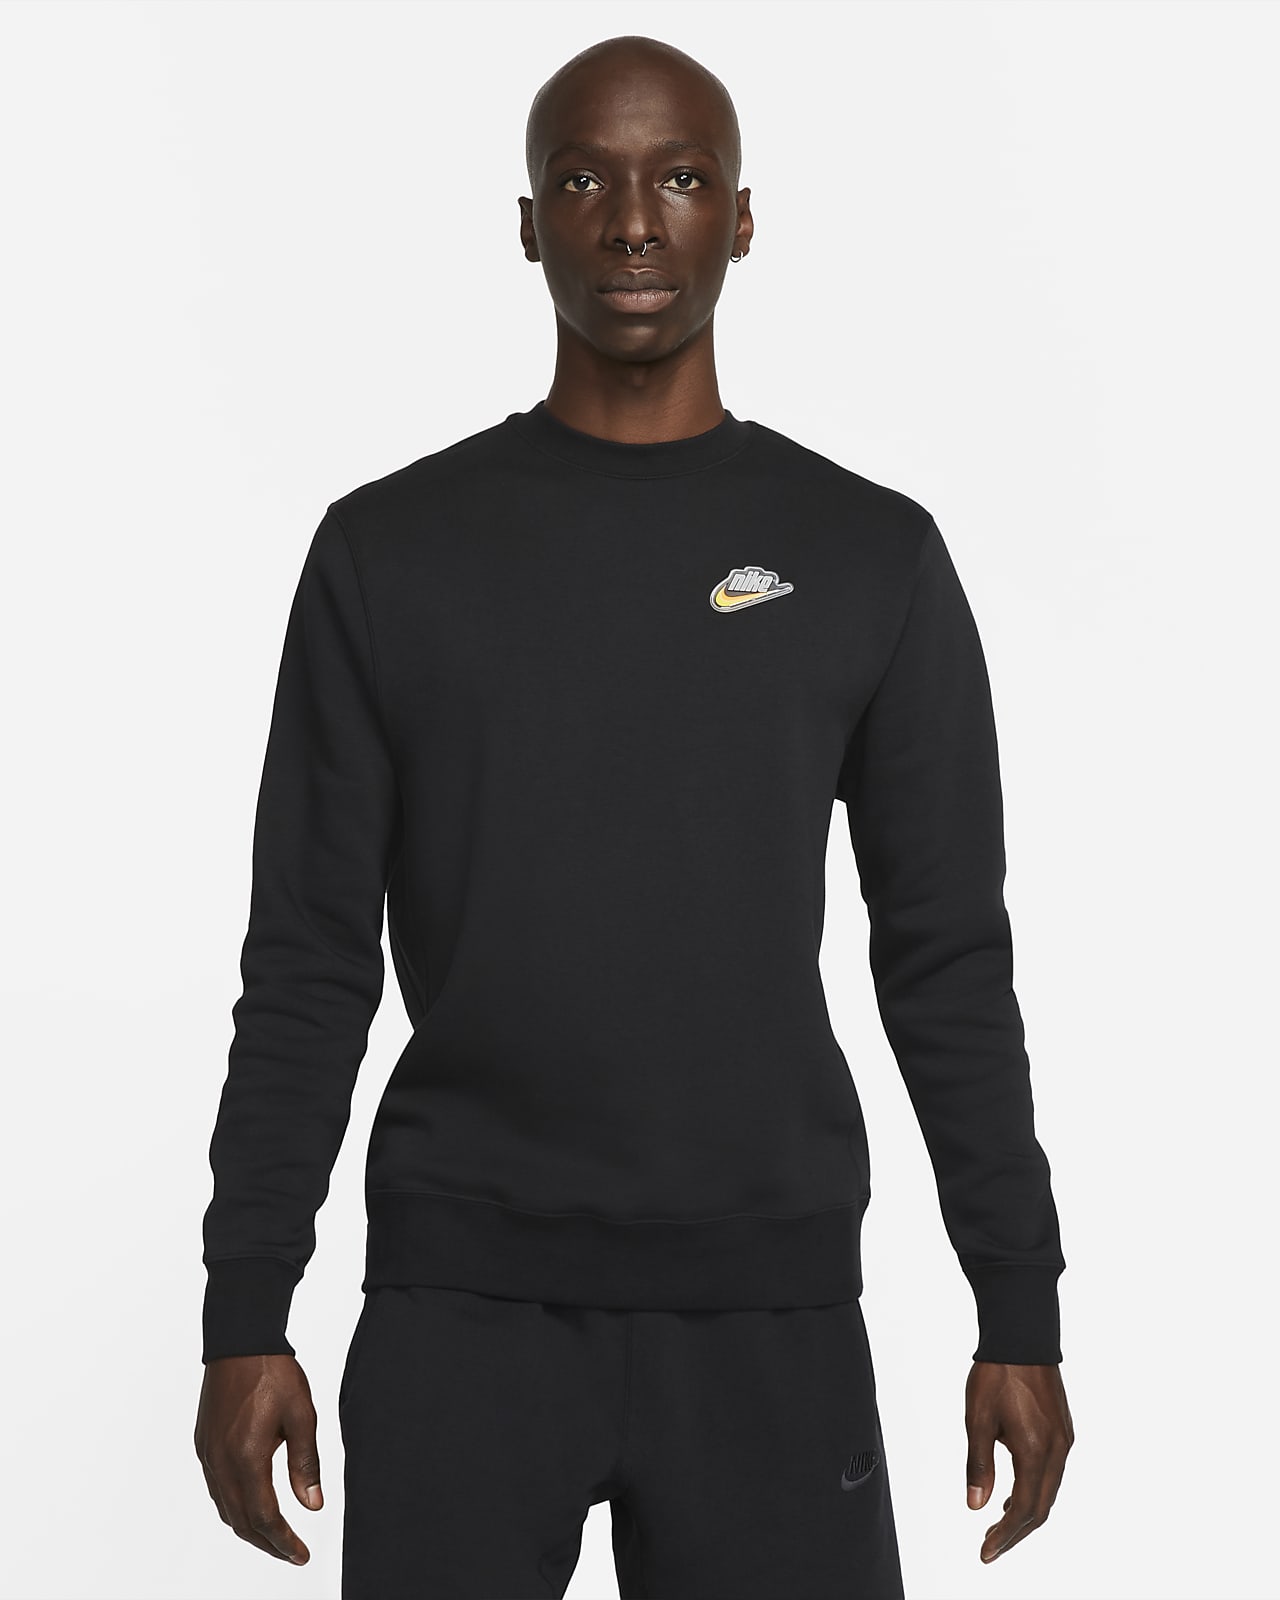 Nike Sportswear Men's "Keep It Clean" Crew Sweatshirt